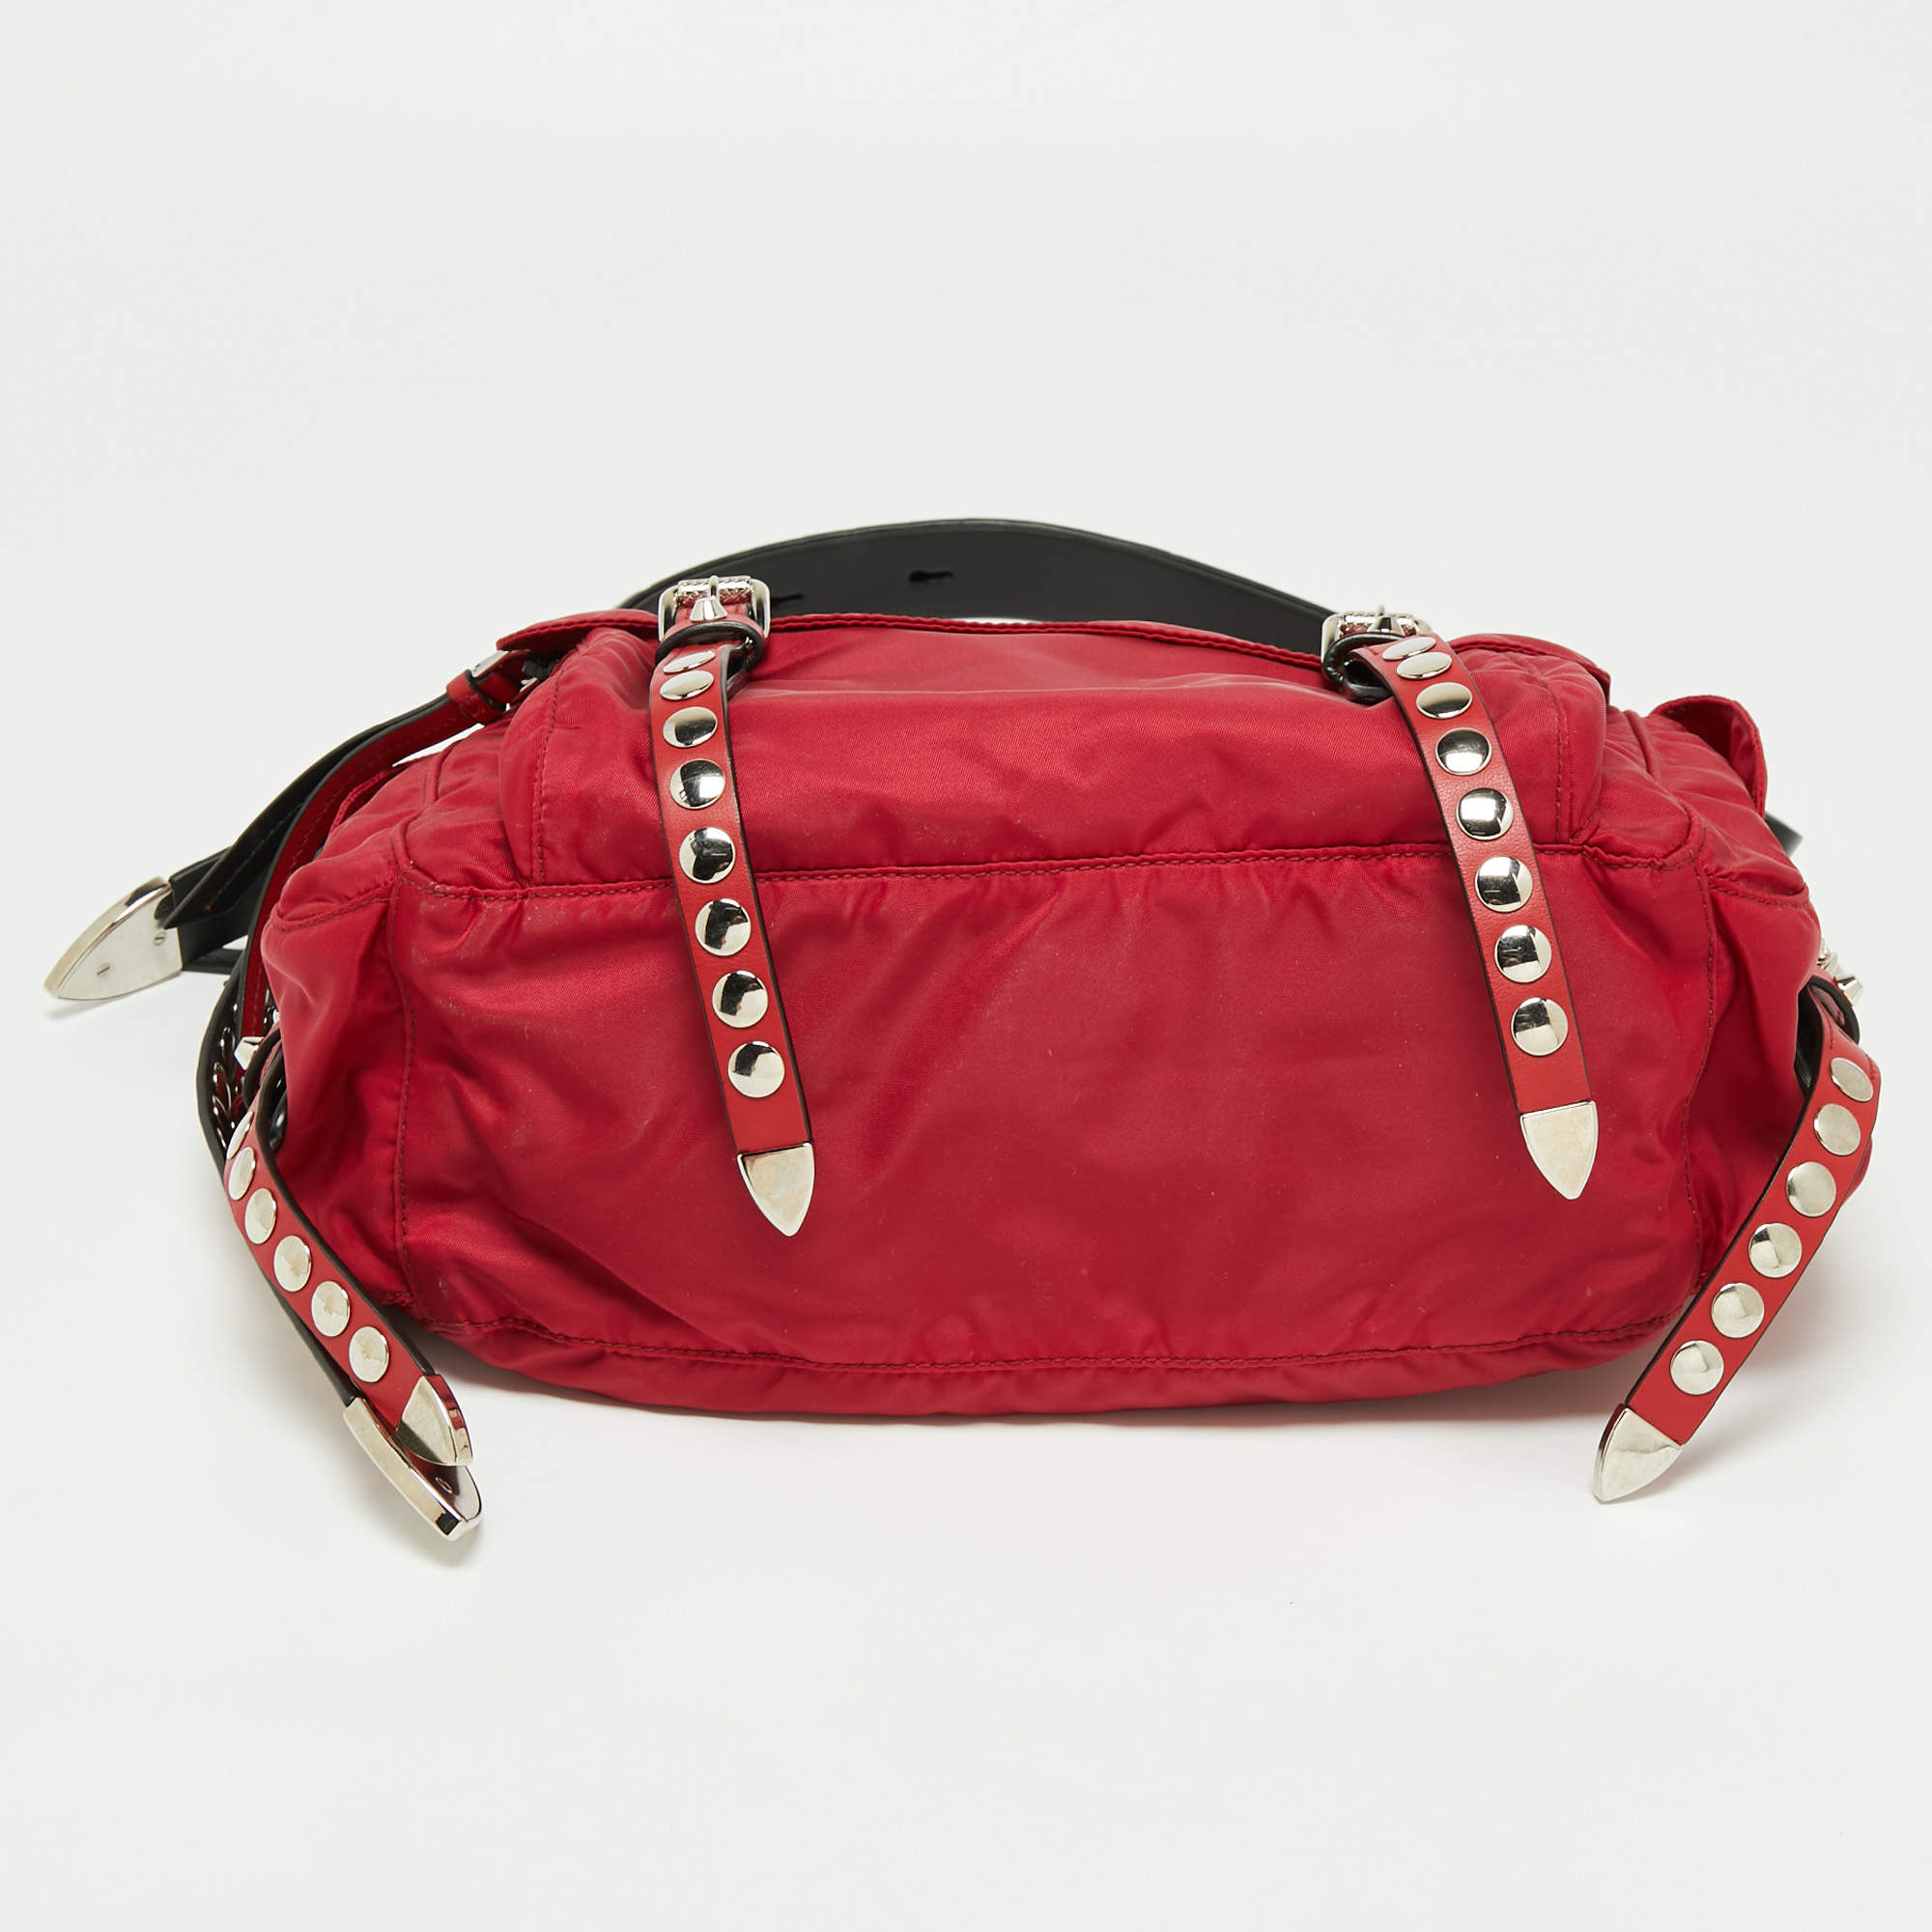 Prada Cream, Black & Red Nylon Vela Studded Messenger Bag with